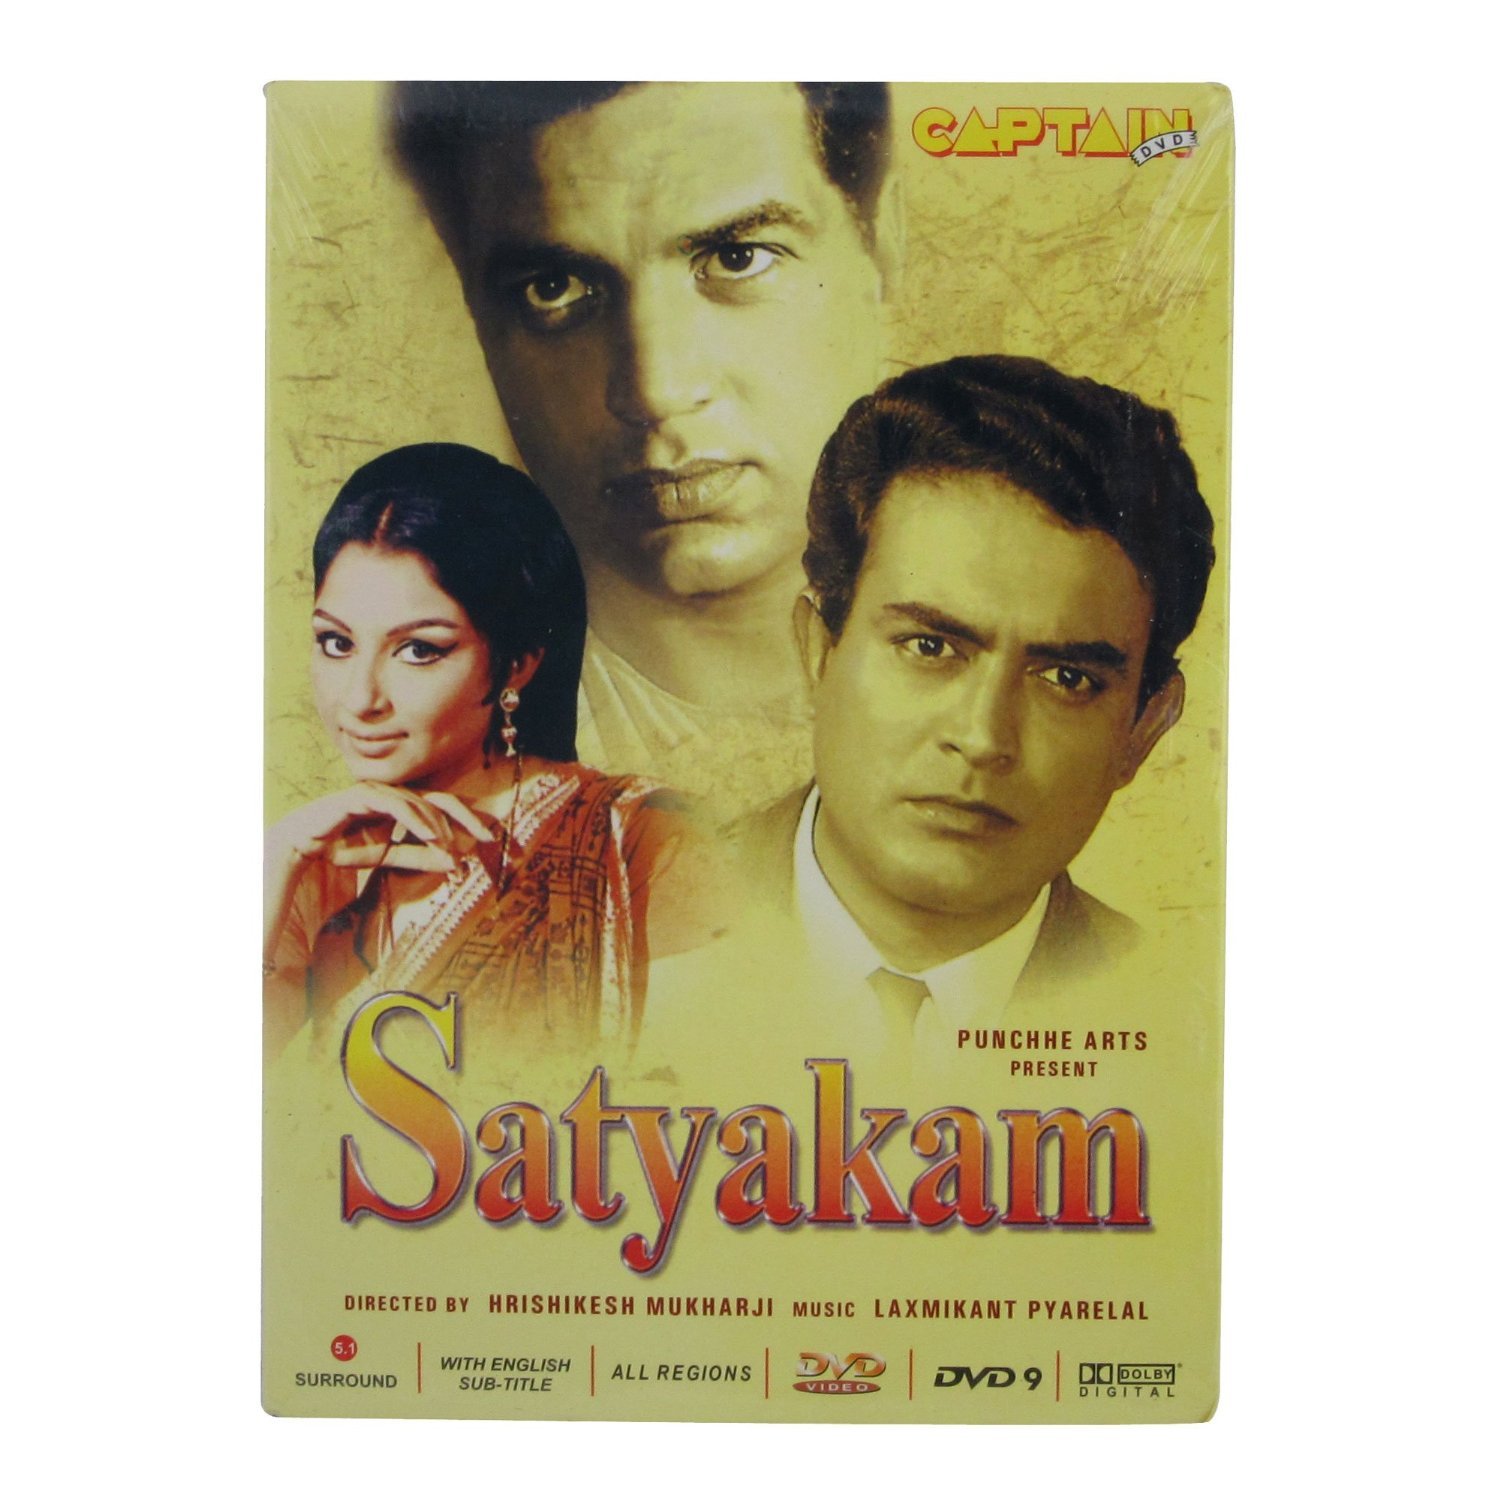 Satyakam Movie Poster